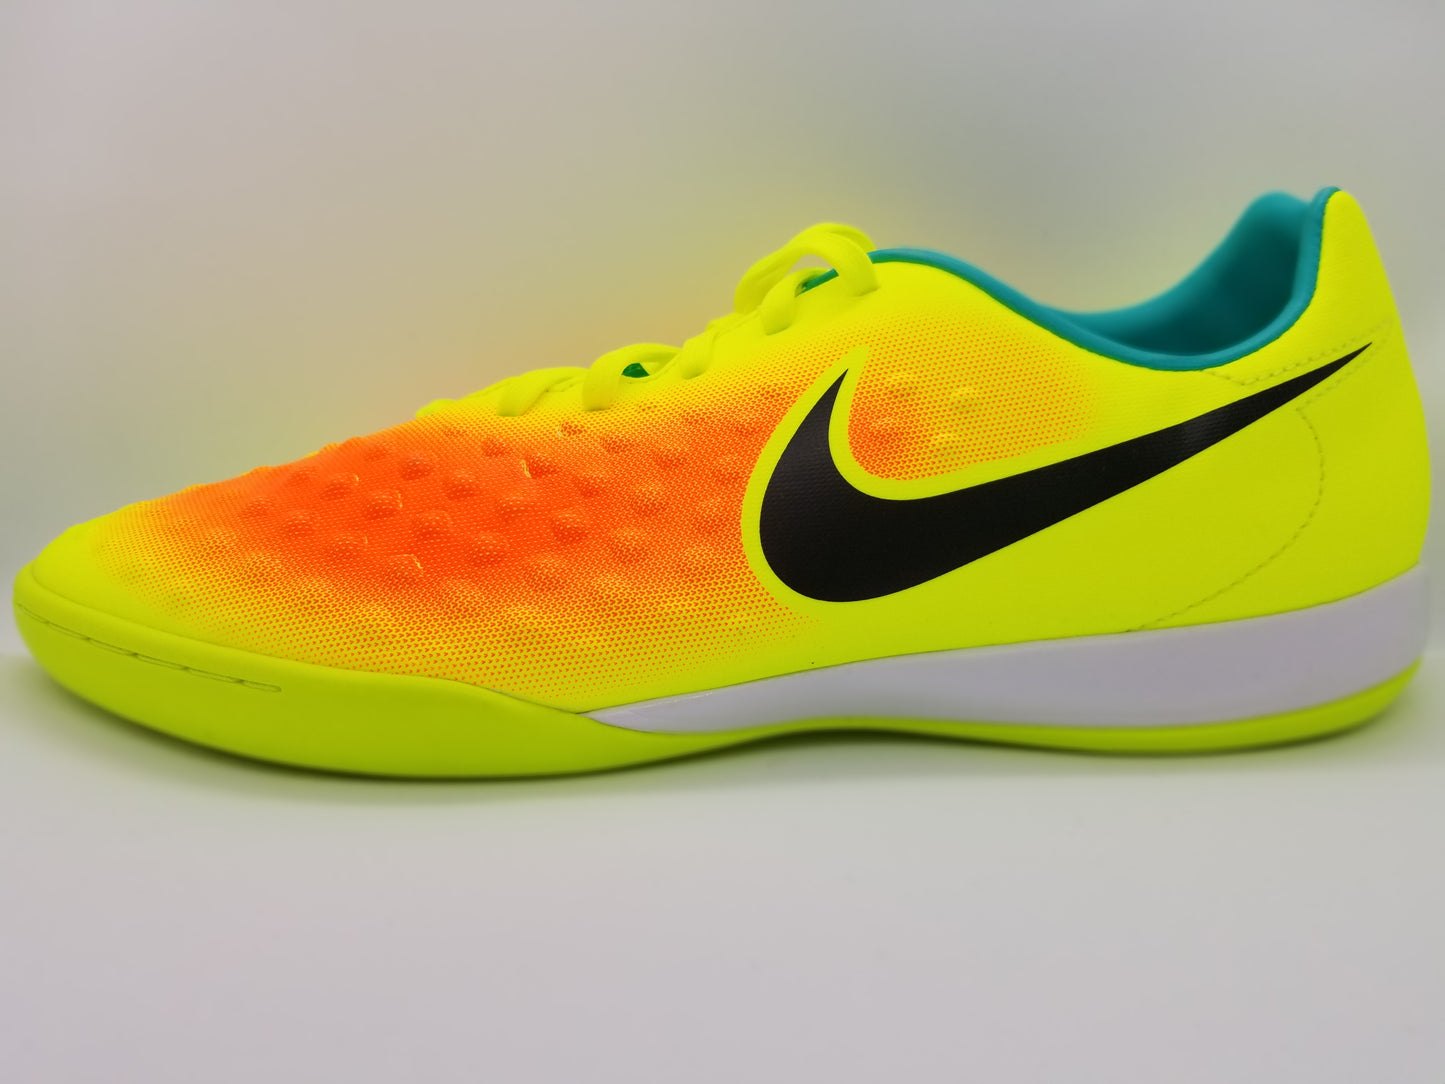 Nike Onda II – Boots